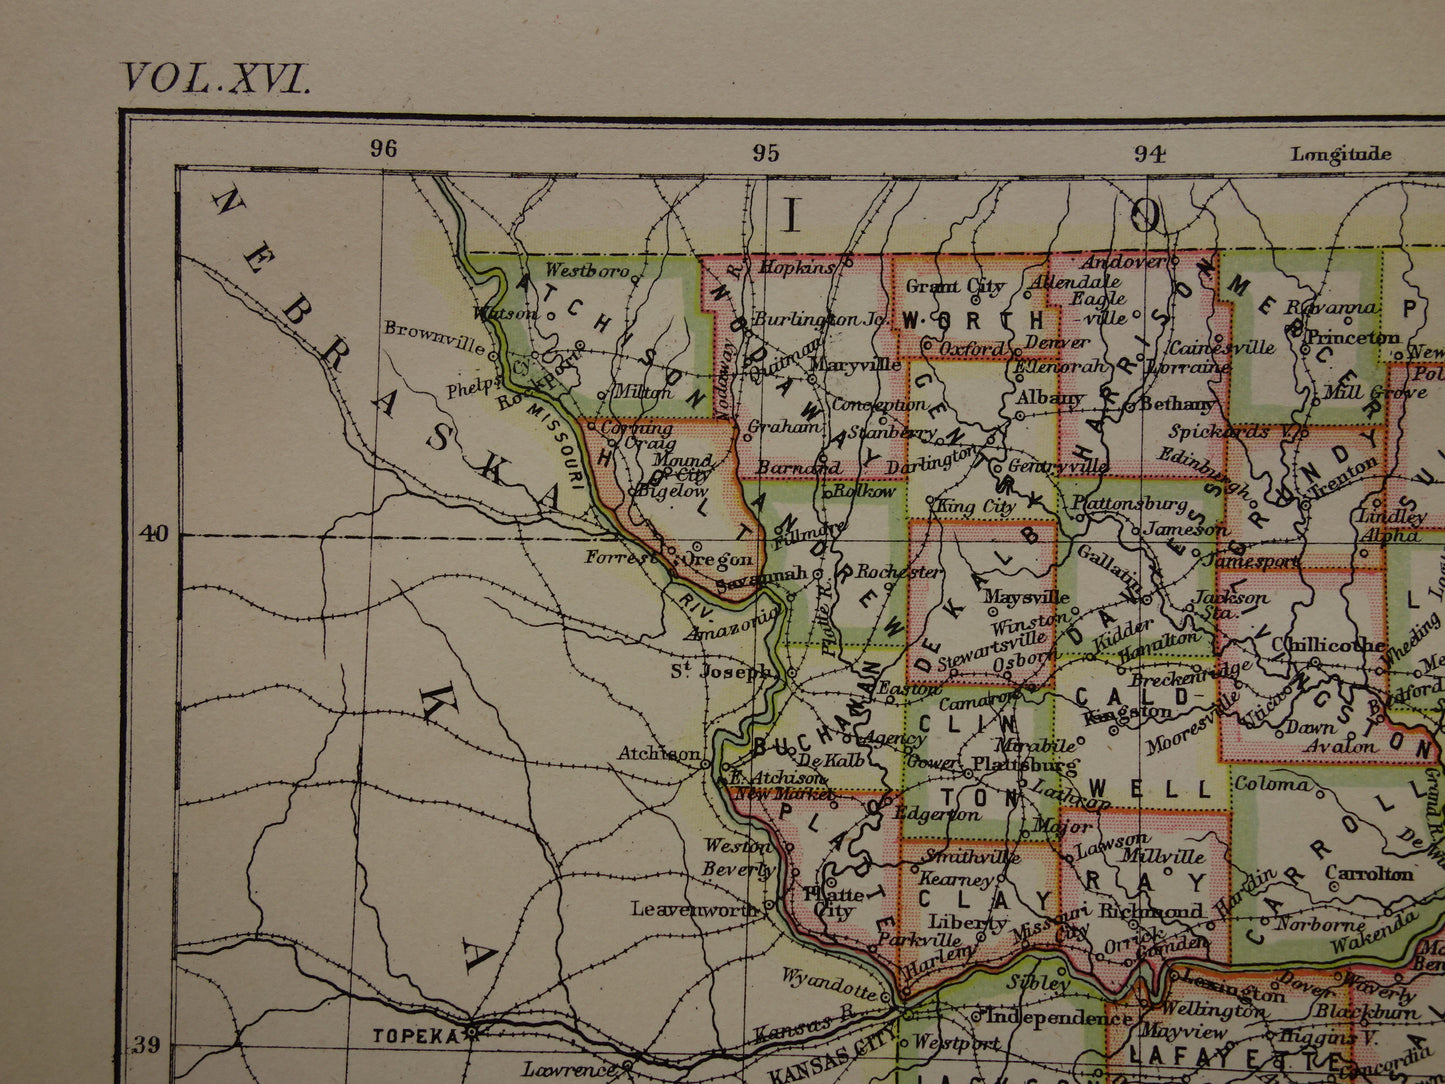 MISSOURI Antieke kaart van de staat Missouri 1883 originele oude kaart Kansas City Saint Louis VS te koop Verenigde Staten